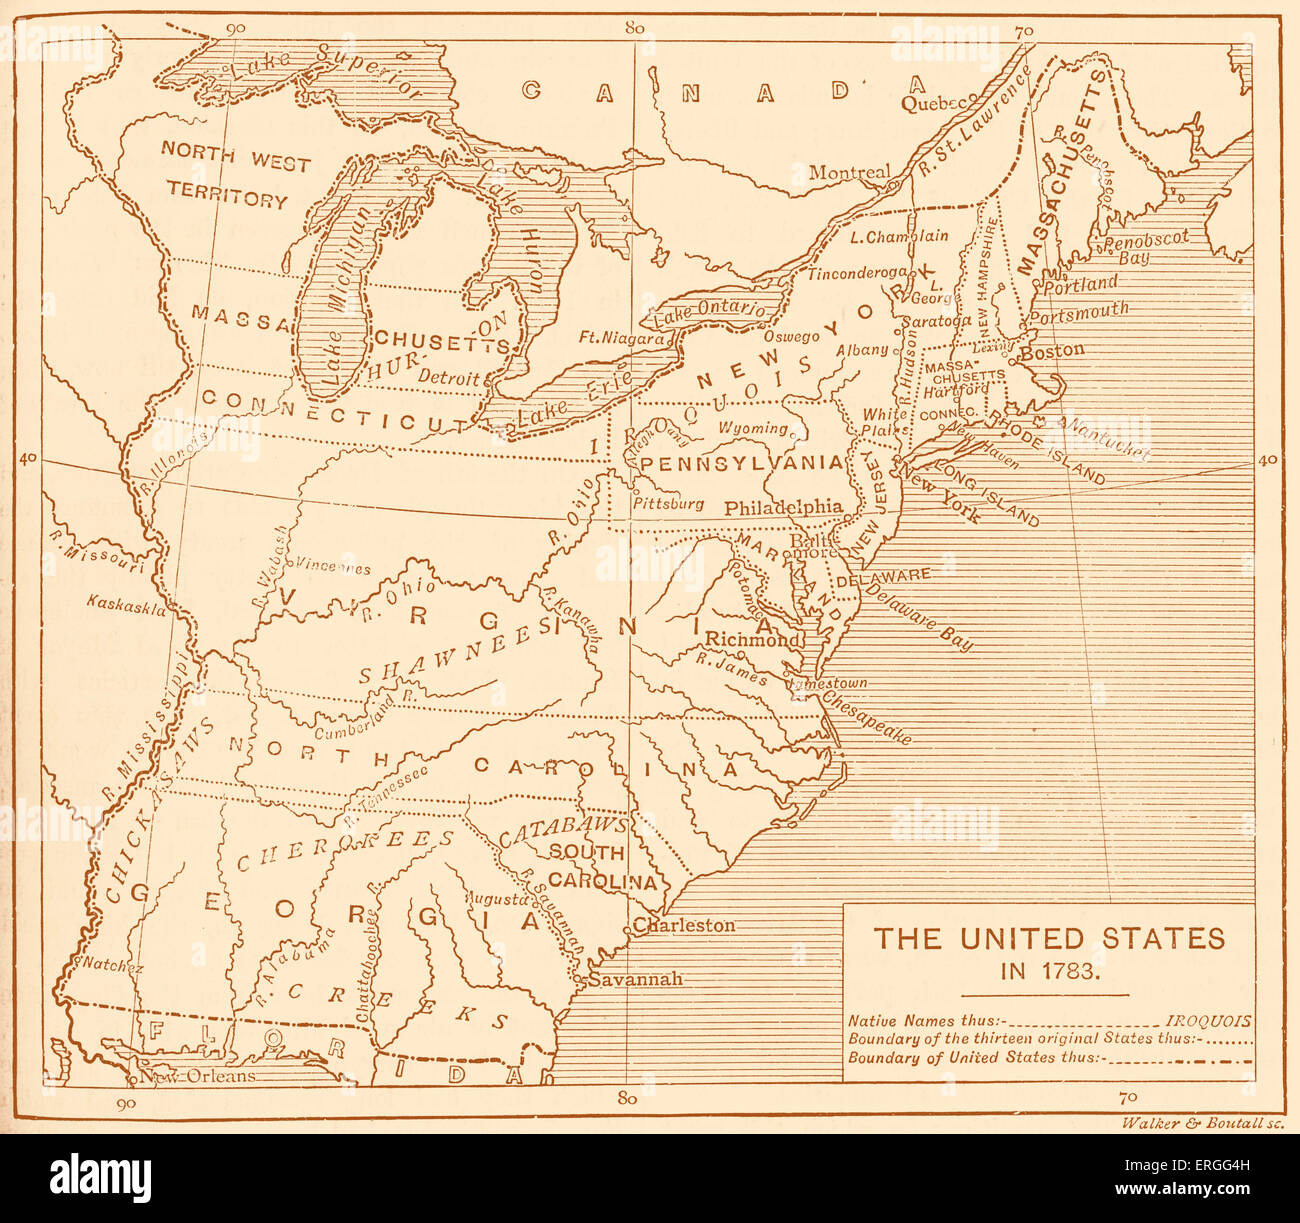 Mappa di post-indipendenza degli Stati Uniti, 1783. Mostra i tredici Stati originali, confine nazionale e dei Nativi Americani i nomi di località. Foto Stock